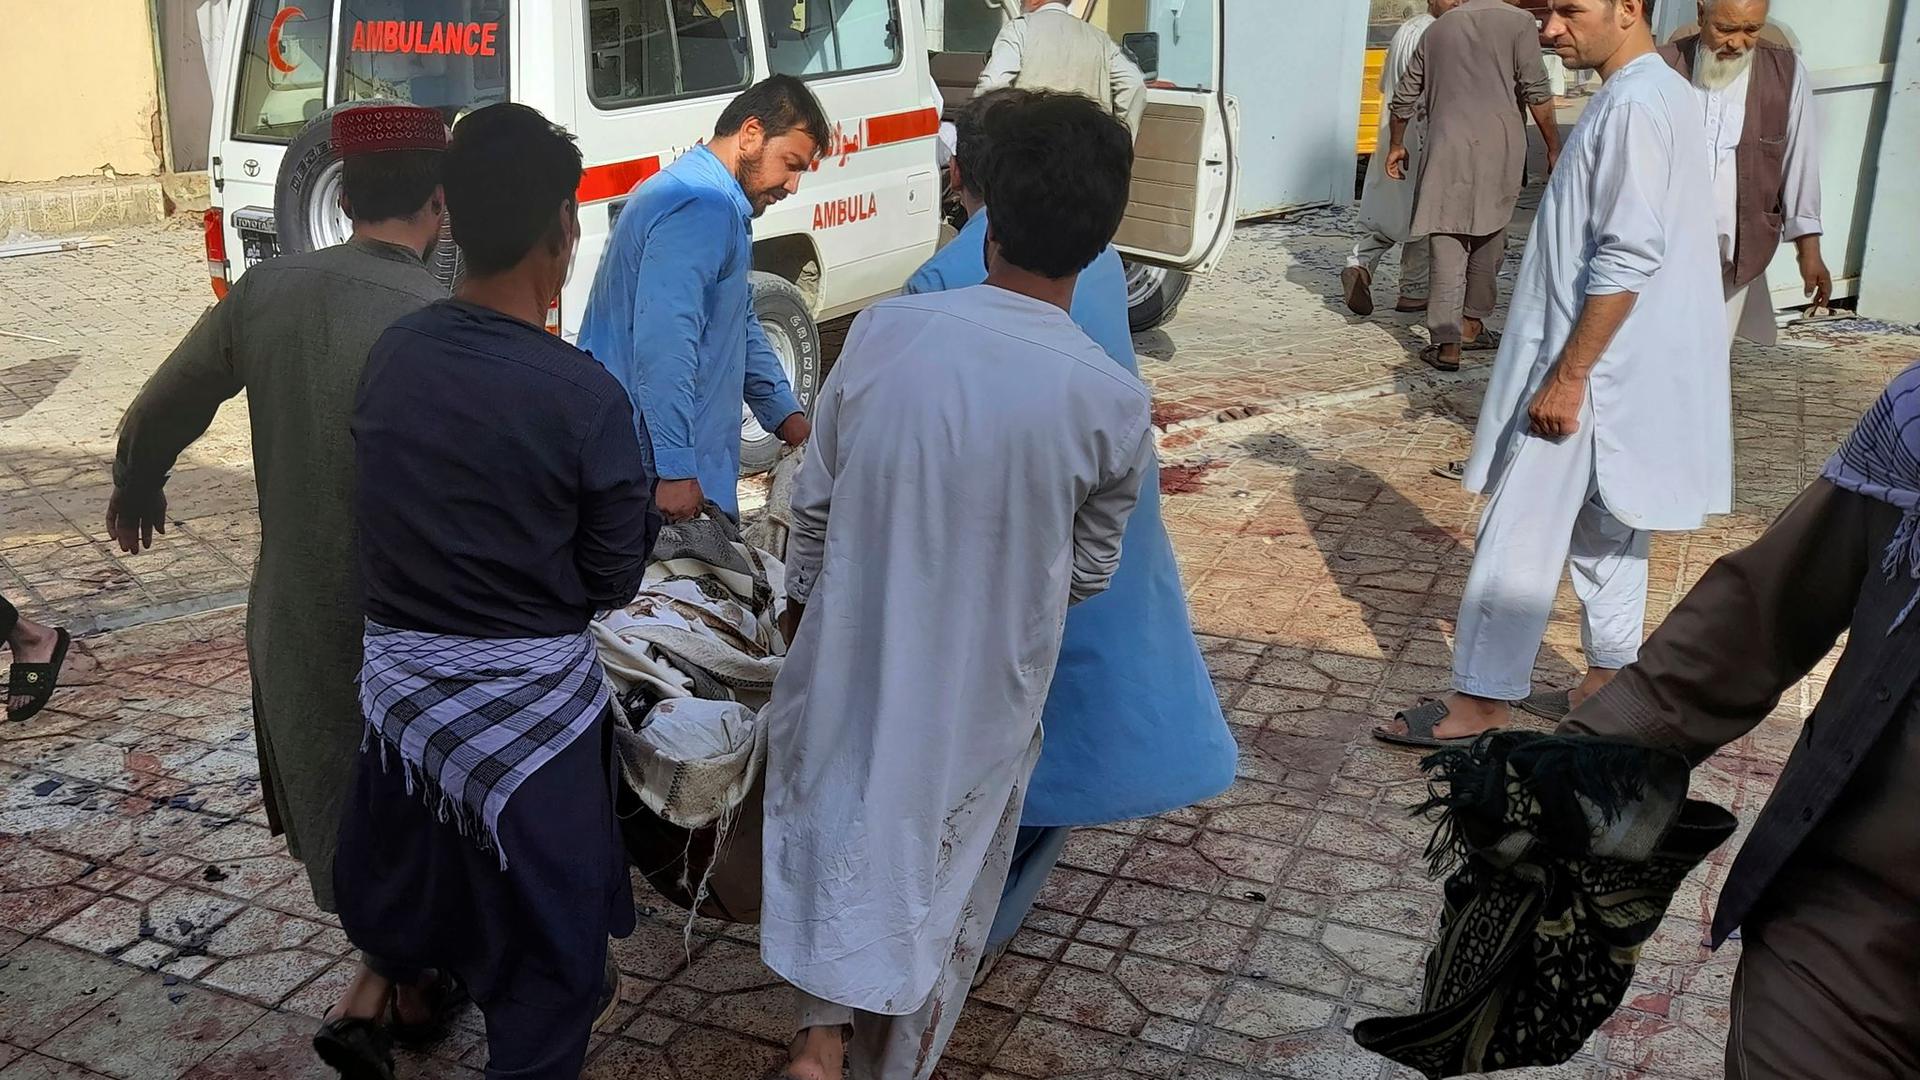 Schon vor einer Woche hatte es in Afghanistan einen Anschlag auf eine schiitische Moschee gegeben.